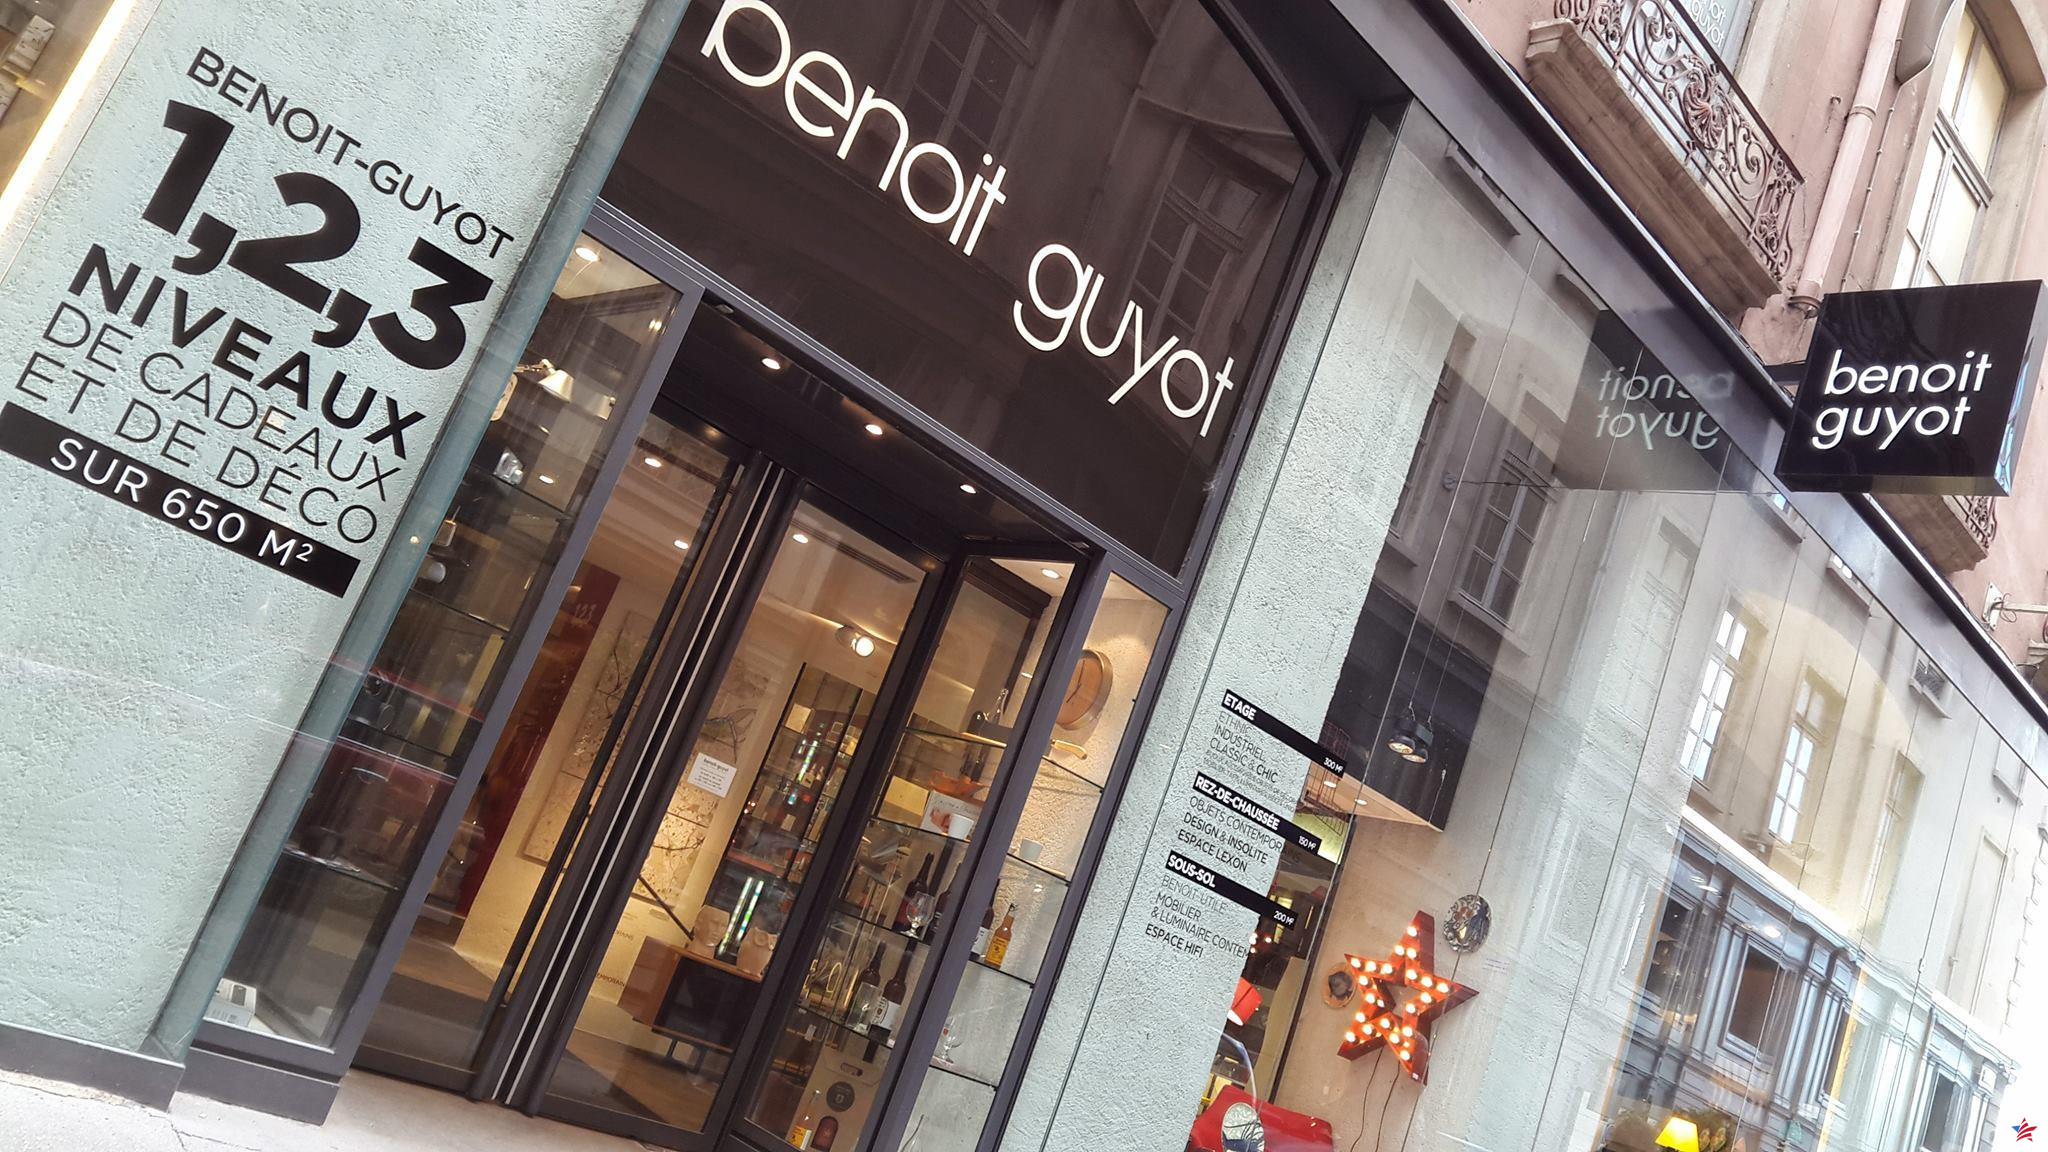 Lyon: después de 125 años de existencia, el cierre de la tienda Benoît Guyot marca el fin de una era en el centro de la ciudad